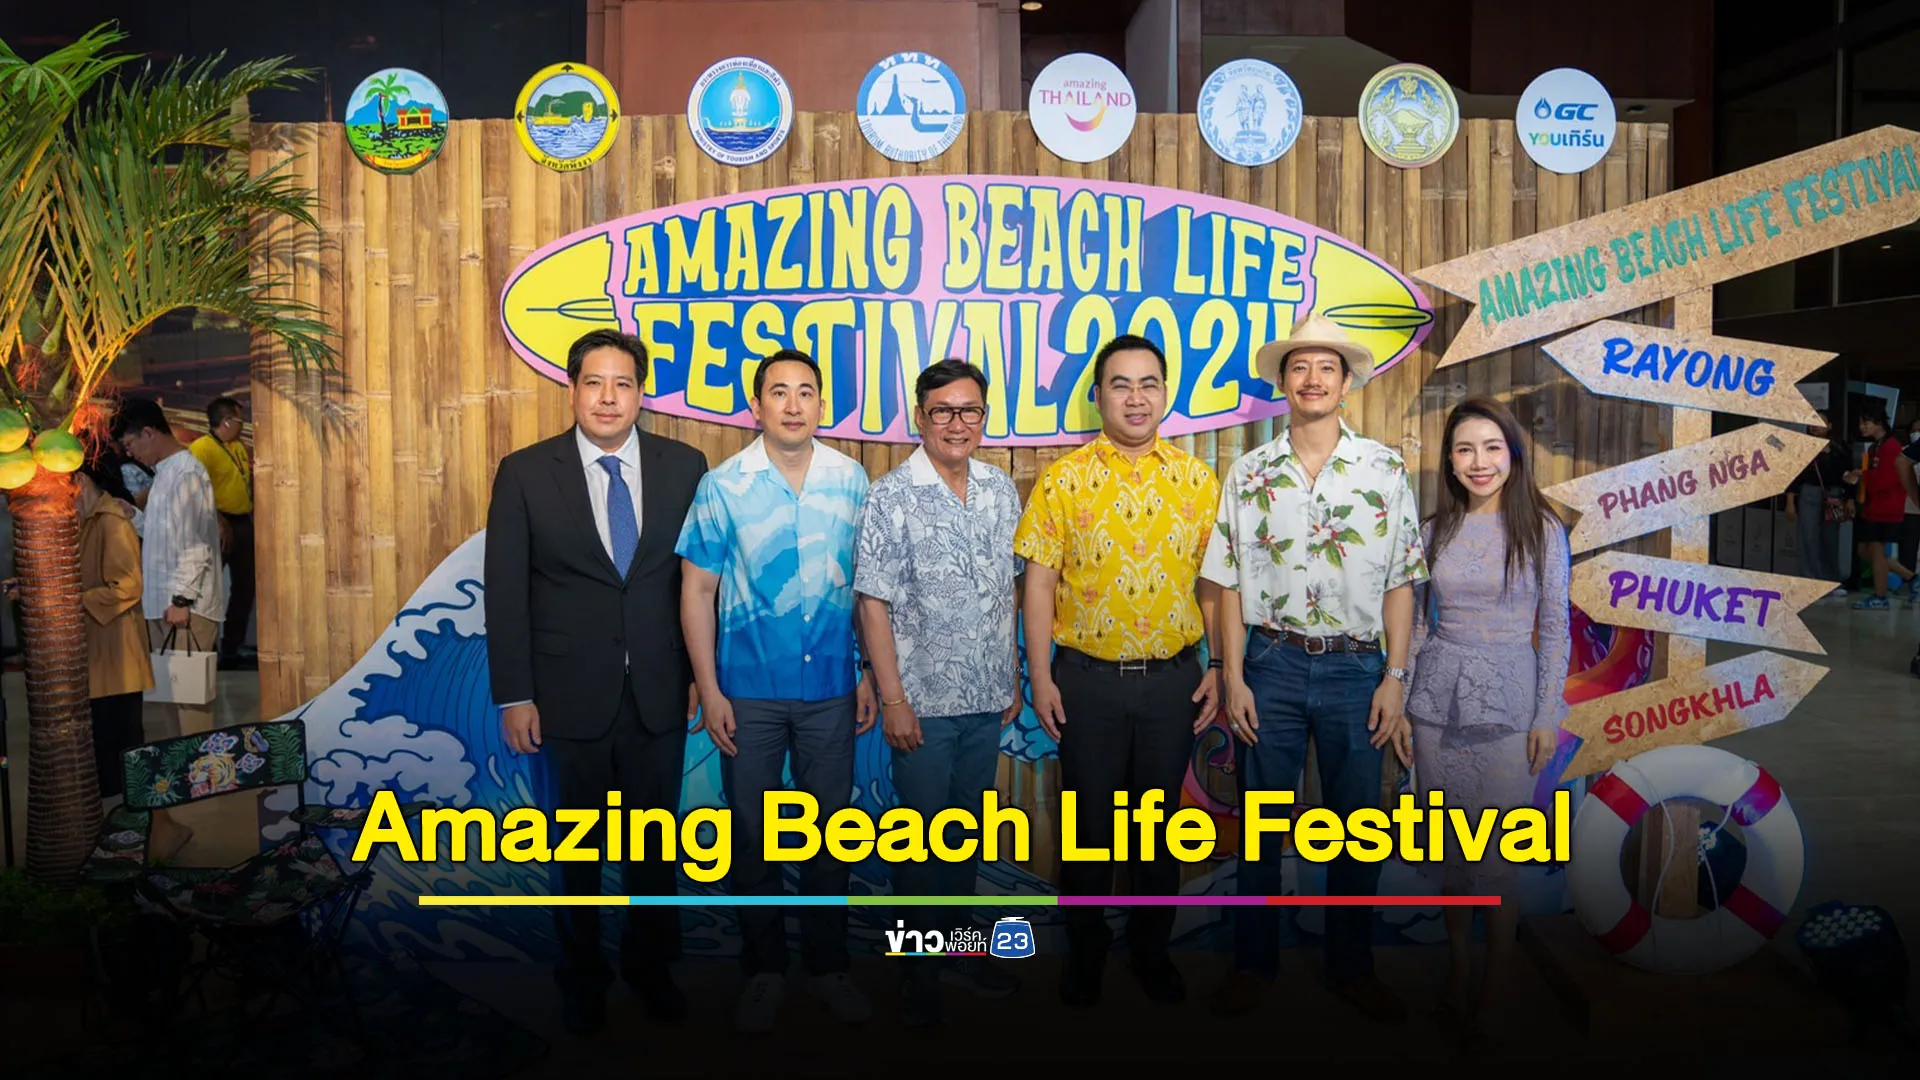 ททท.หนุนเที่ยวกรีนซีซั่น เปิดตัวโครงการ Amazing Beach Life Festival